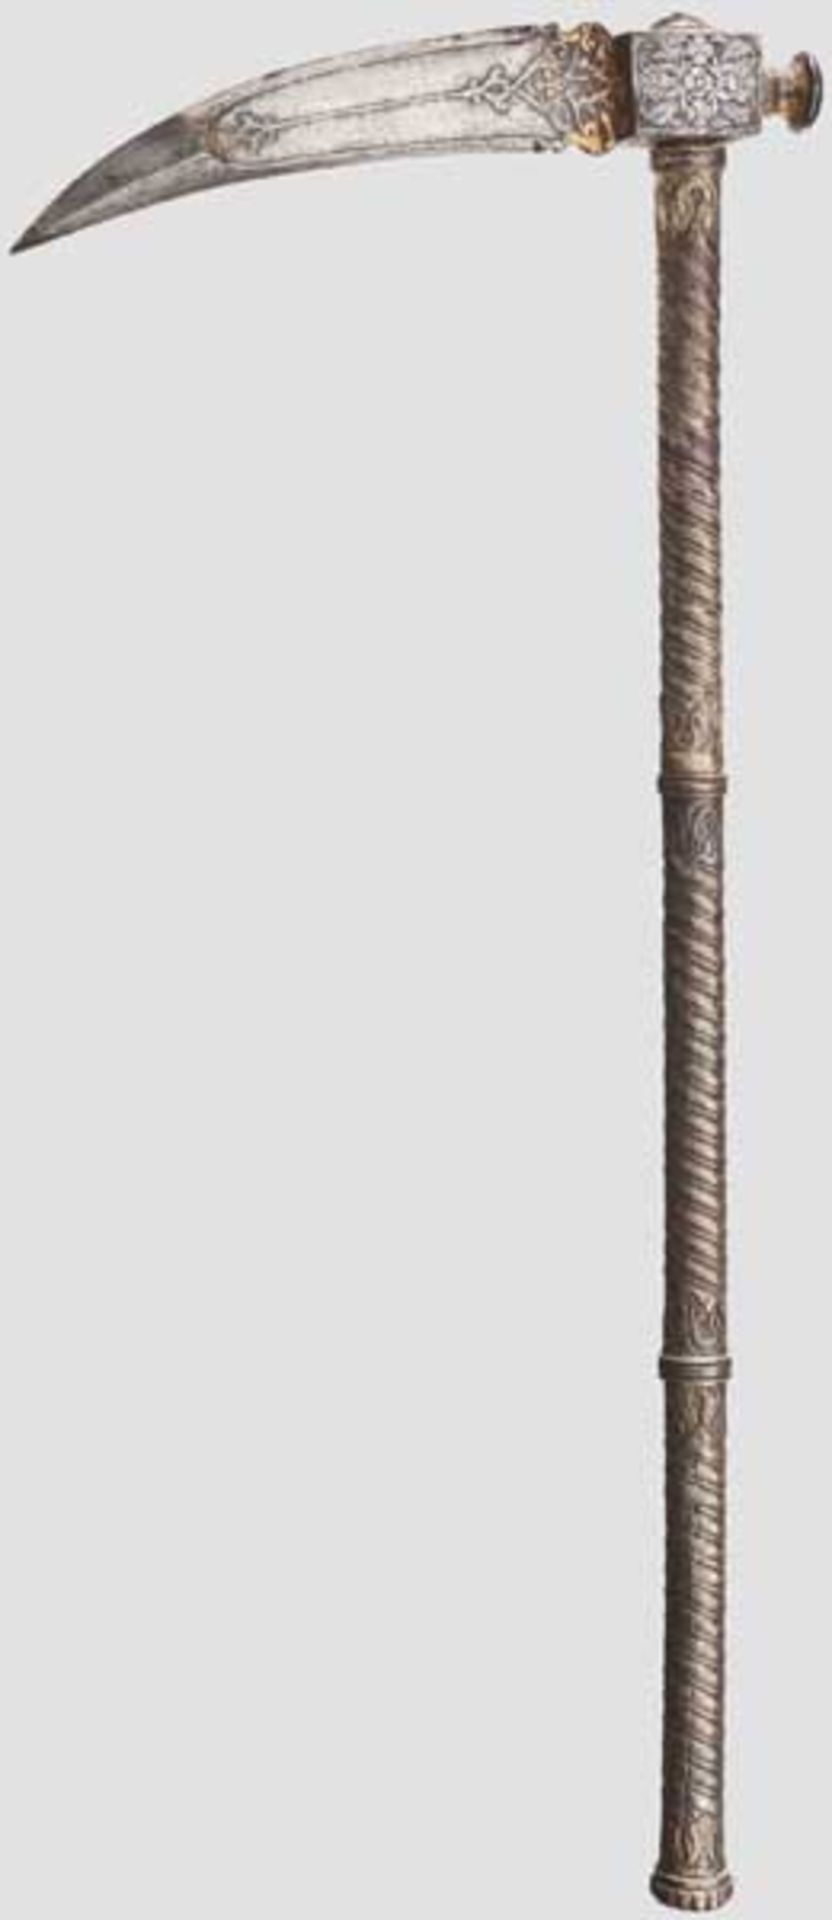 Geschnittener Zaghnal, Indien, 18. Jhdt.   Beidseitig arabeskenförmig geschnittene, am Ansatz in